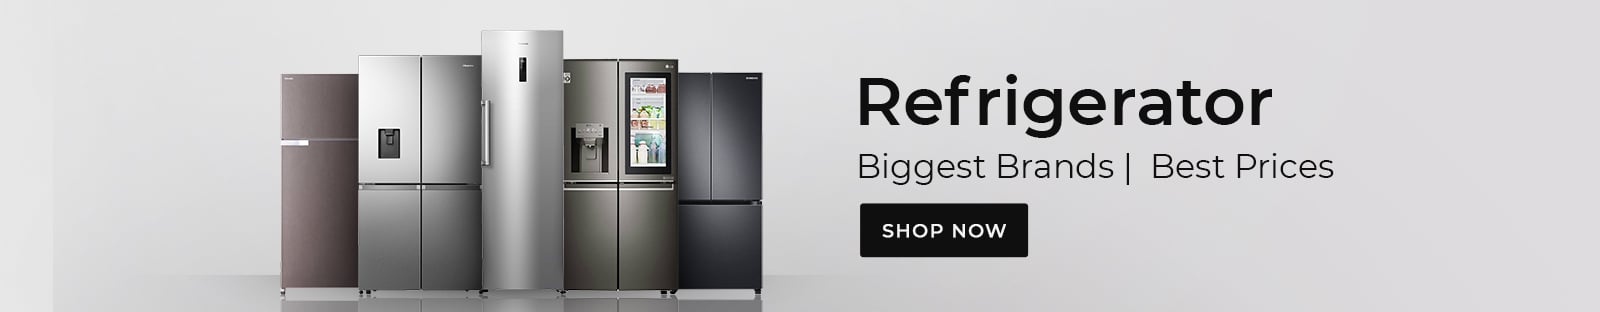 Refrigerator-01